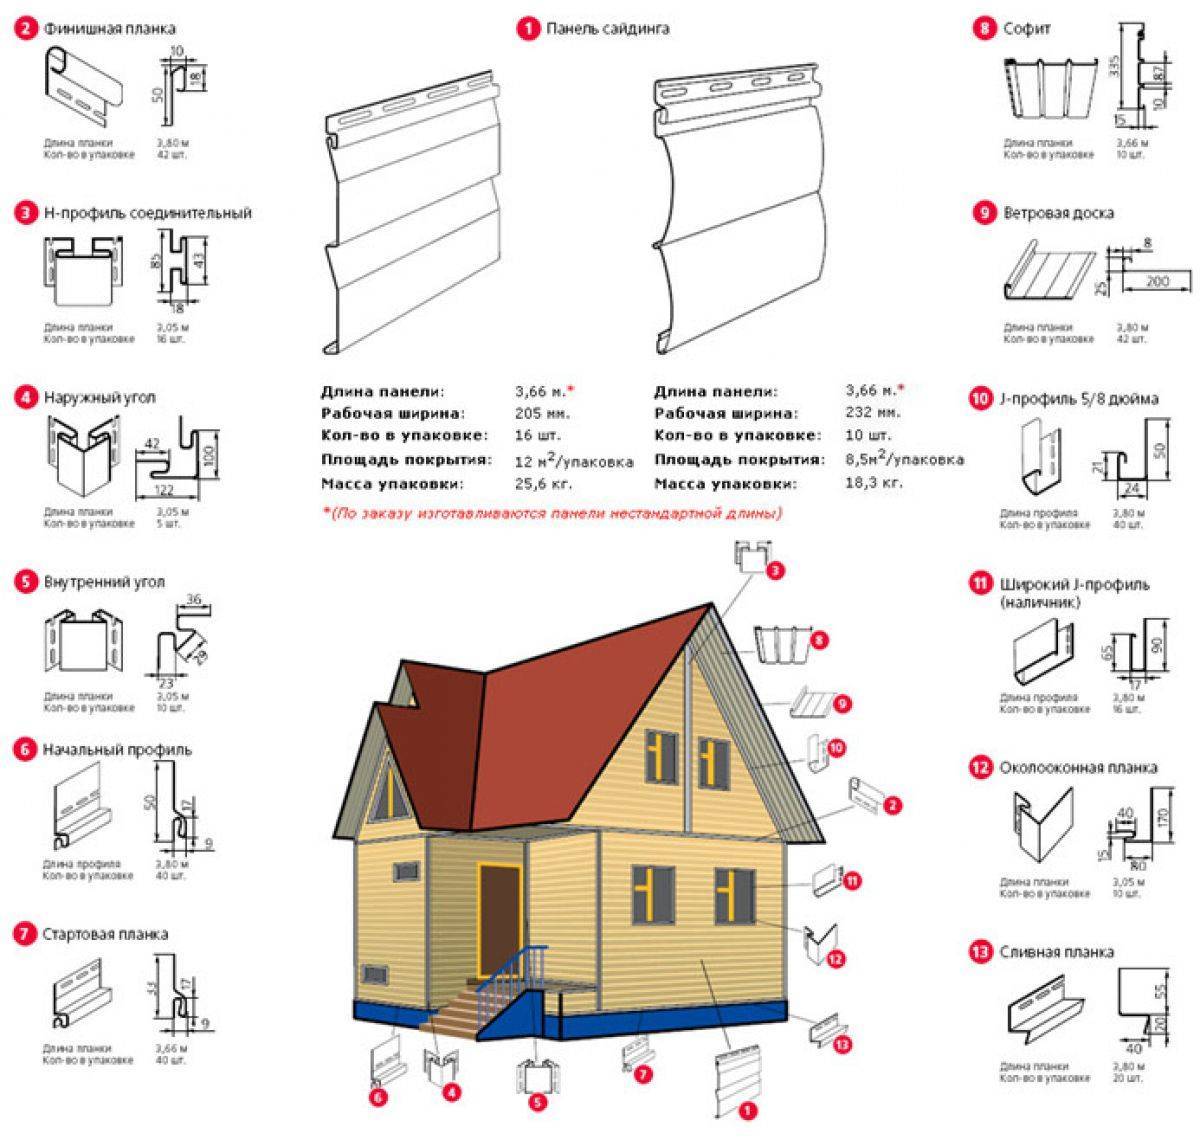 Каковы размеры панелей различных видов сайдинга для наружной обшивки домов